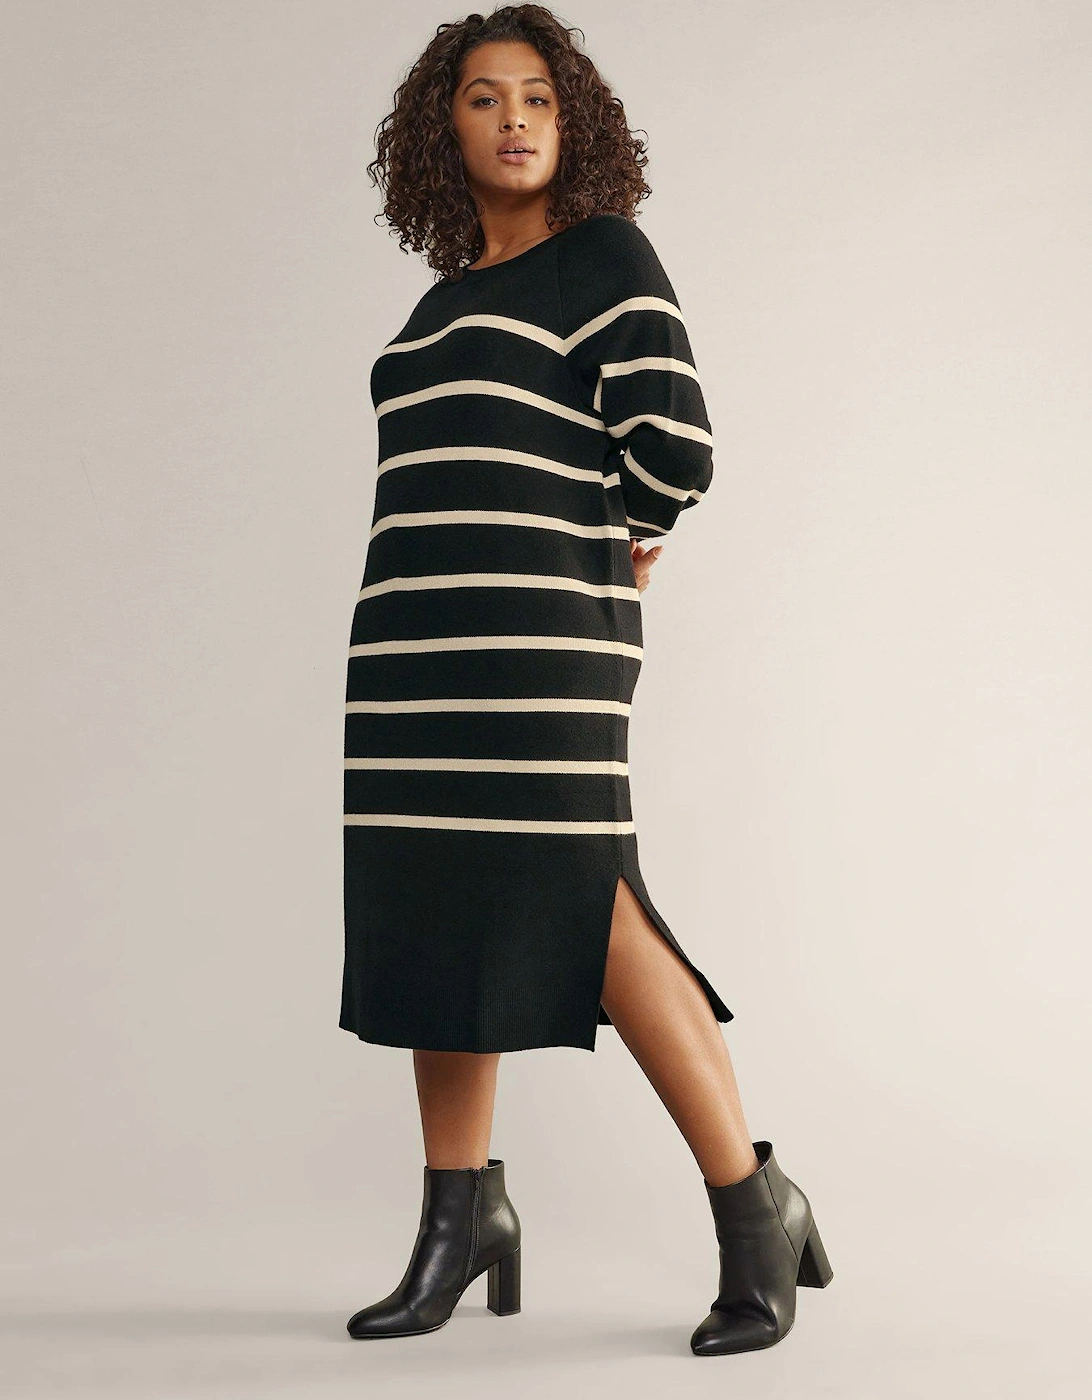 Stripe Knit Dress Black Ivory, 2 of 1